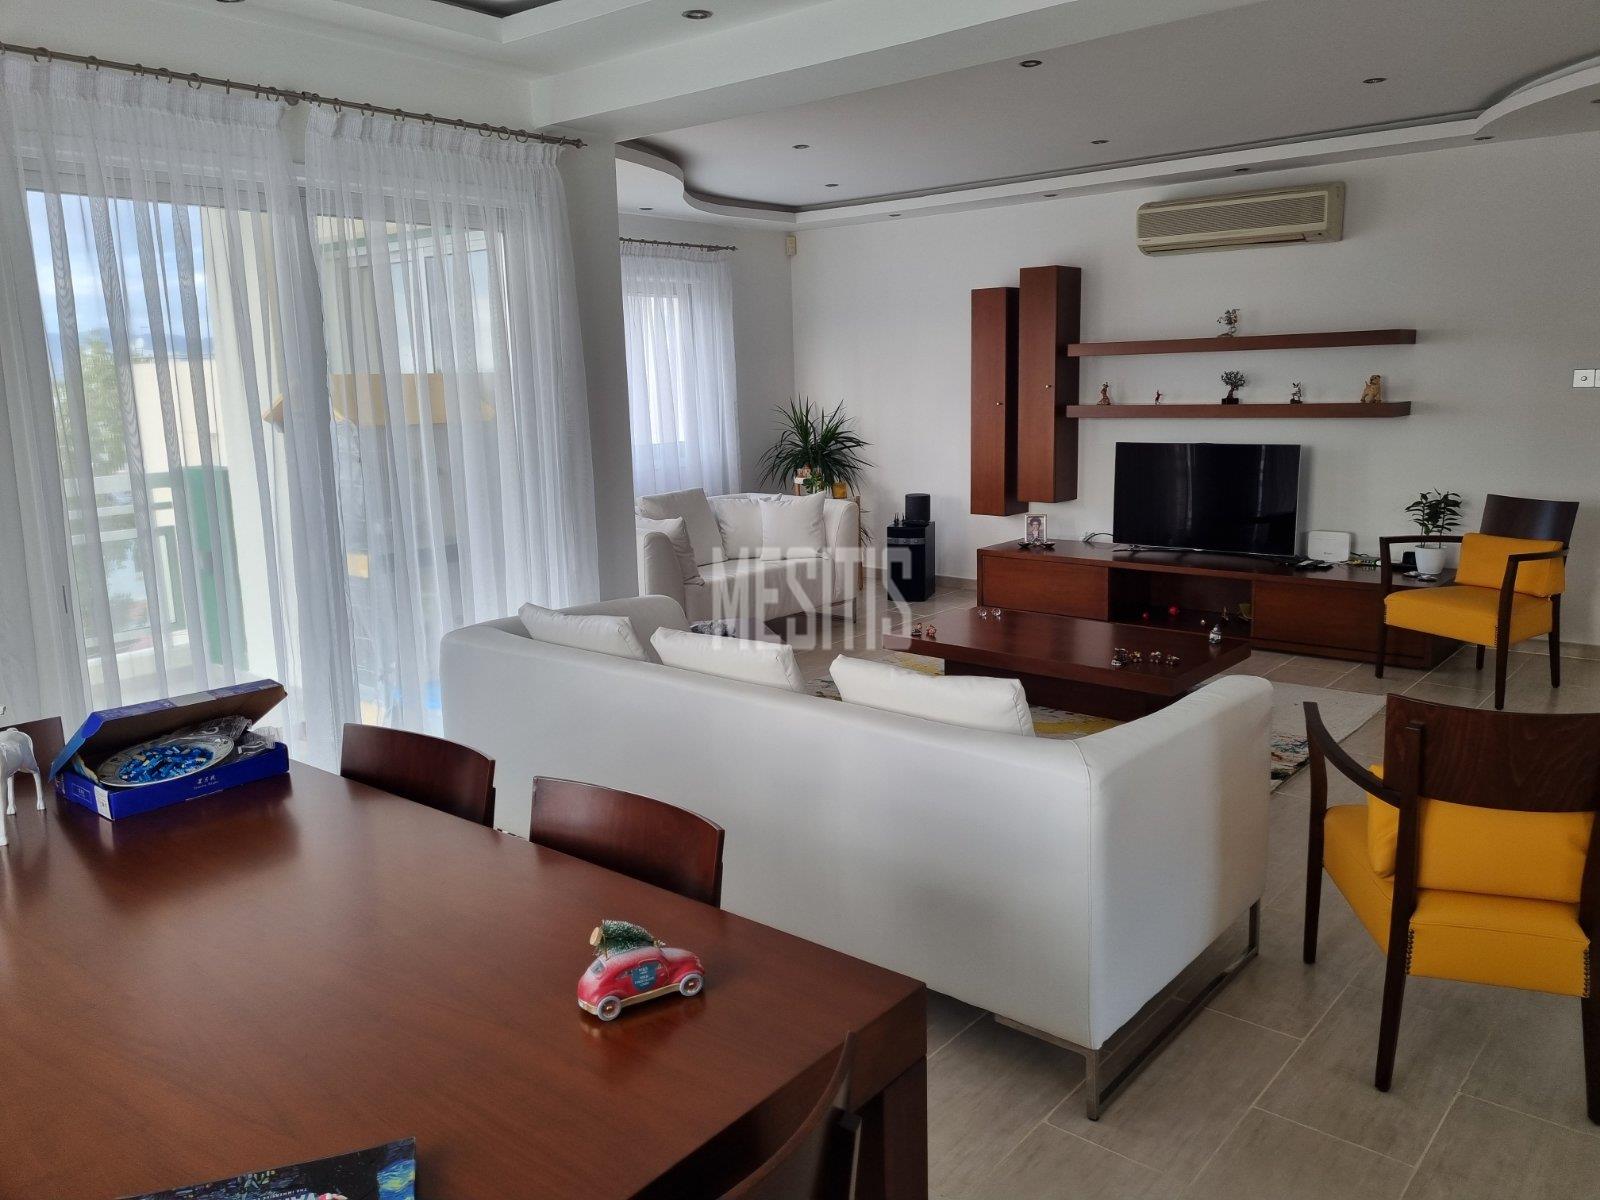 3 Βedroom Τop Floor Apartment For Sale In A Prime Location With Large Spaces And Incredible Aesthetics Αnd Views To All Of Nicosia #30861-1